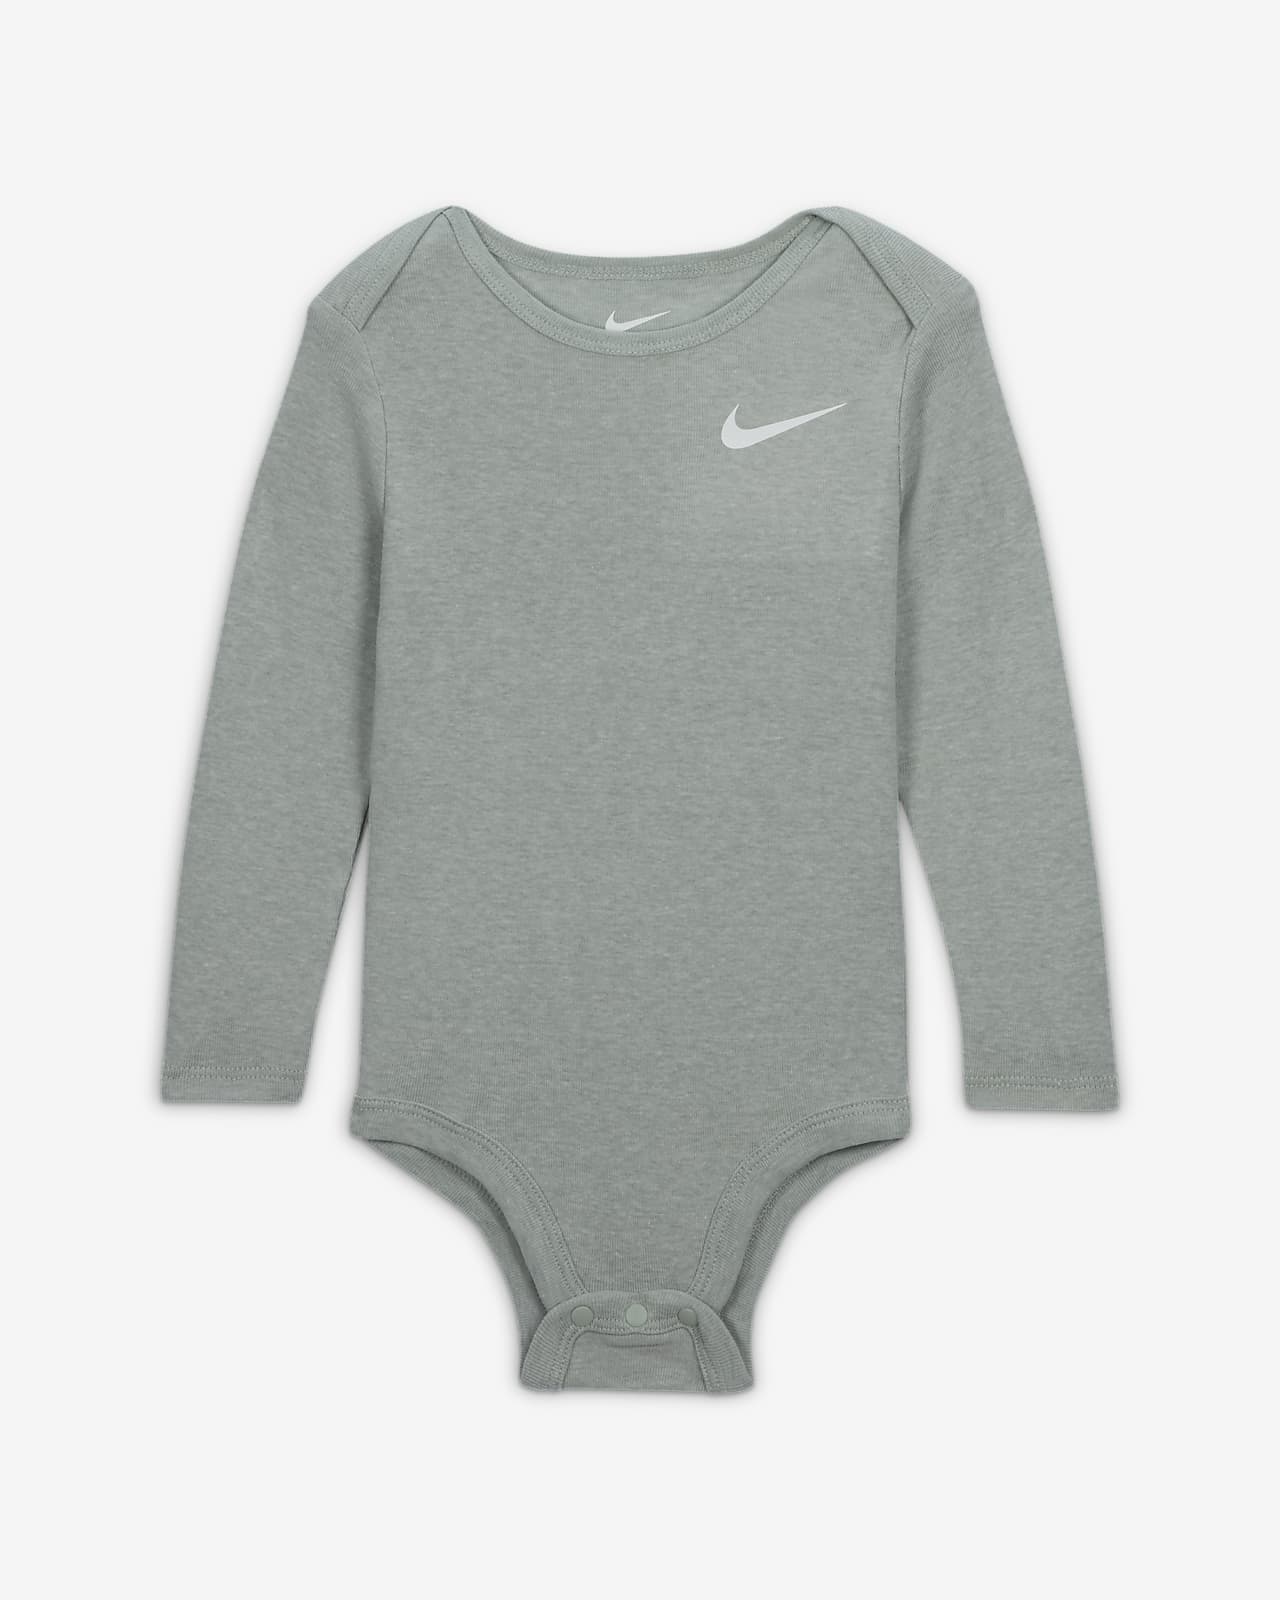 Nike Essentials 3-Piece Pants Set. Set Baby 3-Piece